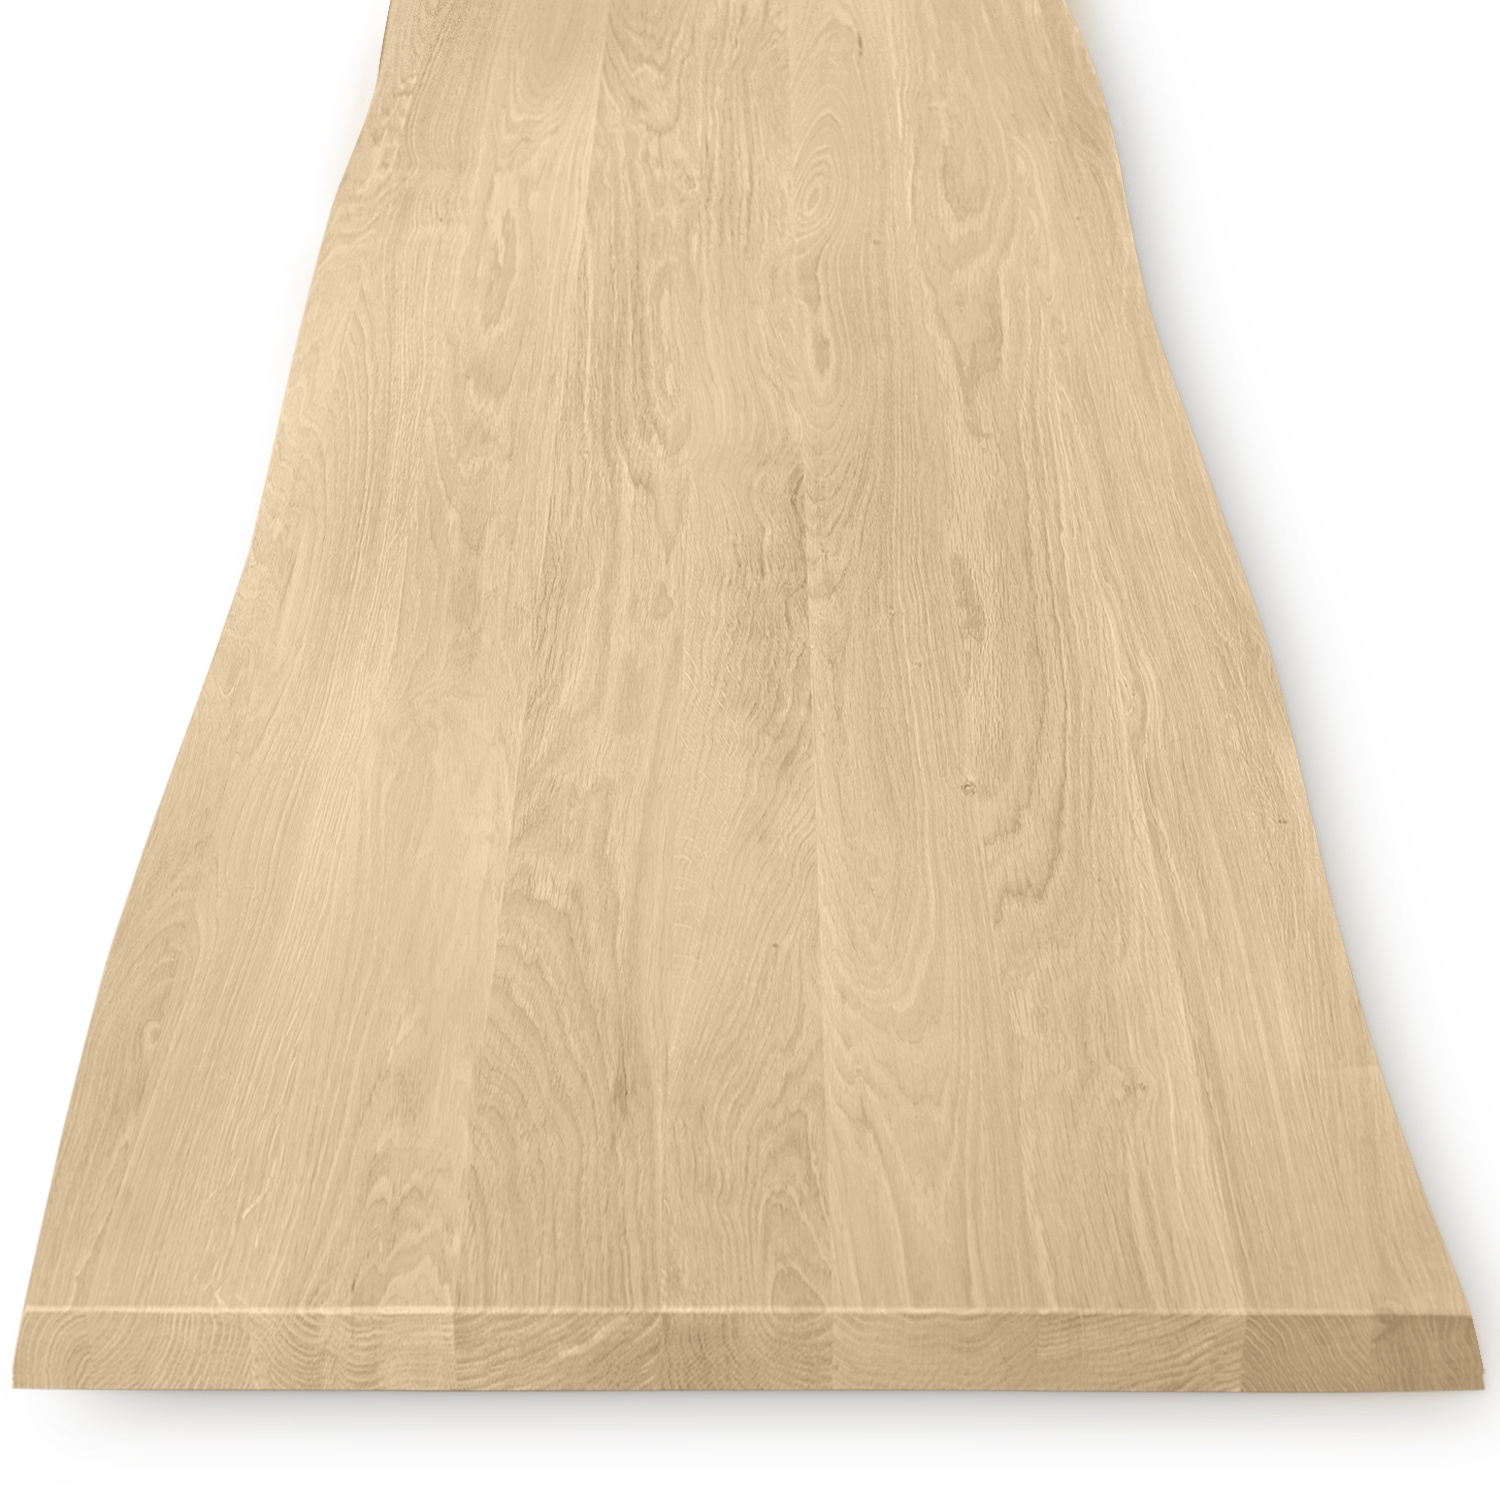  Tischplatte Eiche - mit Baumkante (Optik)  - nach Maß - 4 cm dick (1-Schicht) - Breite Lamellen (10 - 12 cm breit) - Eichenholz A-Qualität - verleimt & künstlich getrocknet (HF 8-12%) - 50-120x50-248 cm